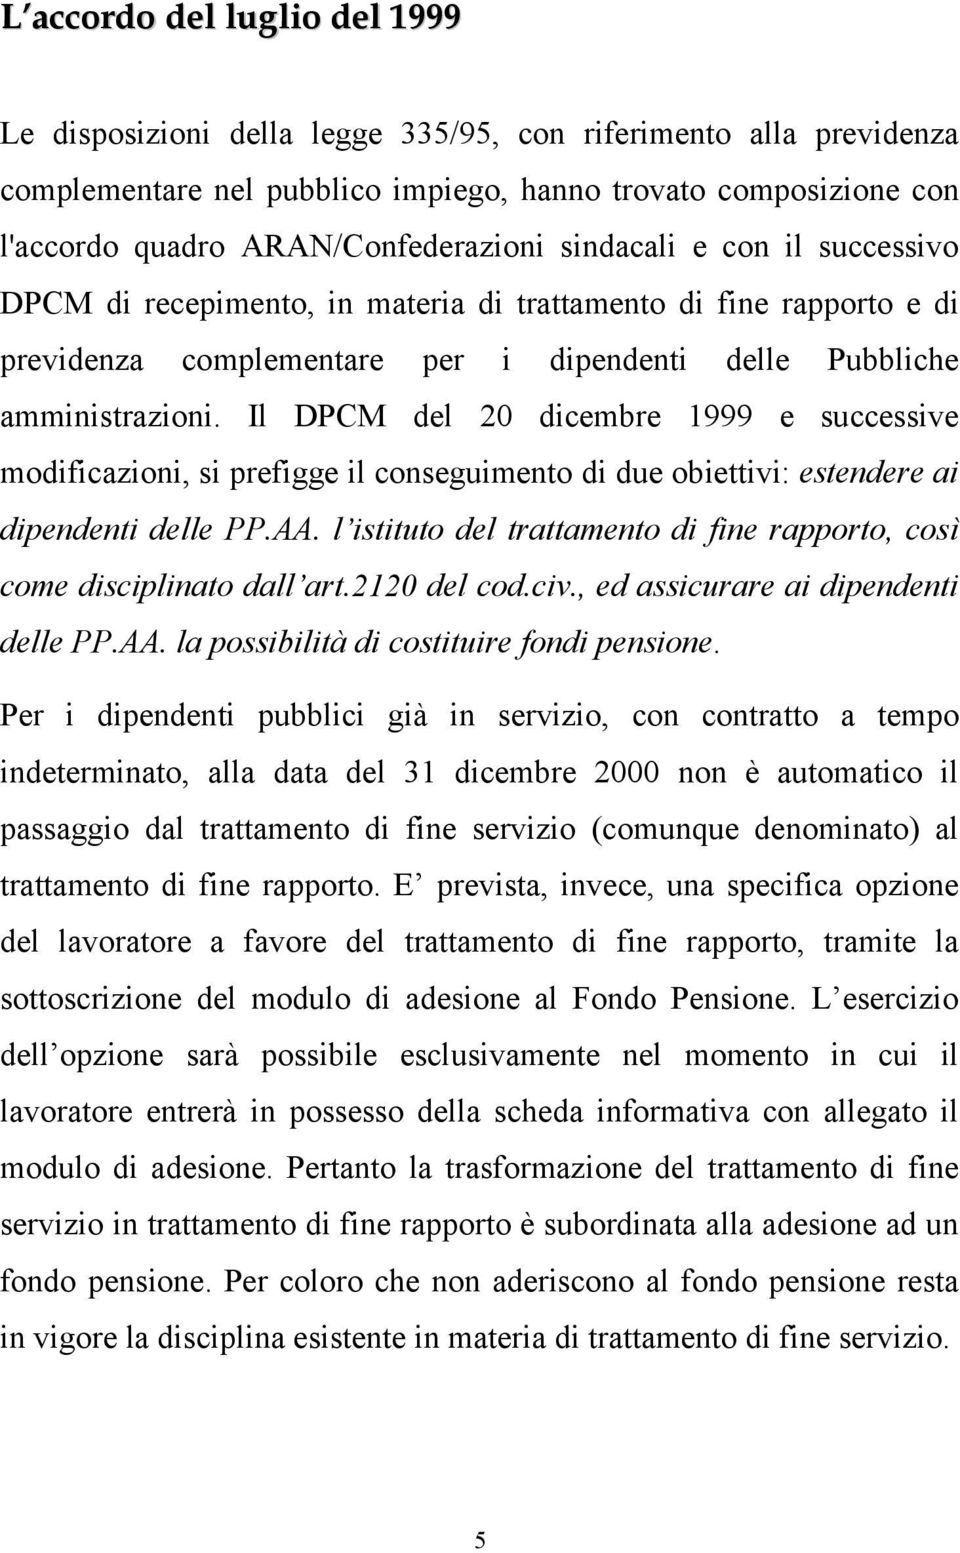 Il DPCM del 20 dicembre 1999 e successive modificazioni, si prefigge il conseguimento di due obiettivi: estendere ai dipendenti delle PP.AA.